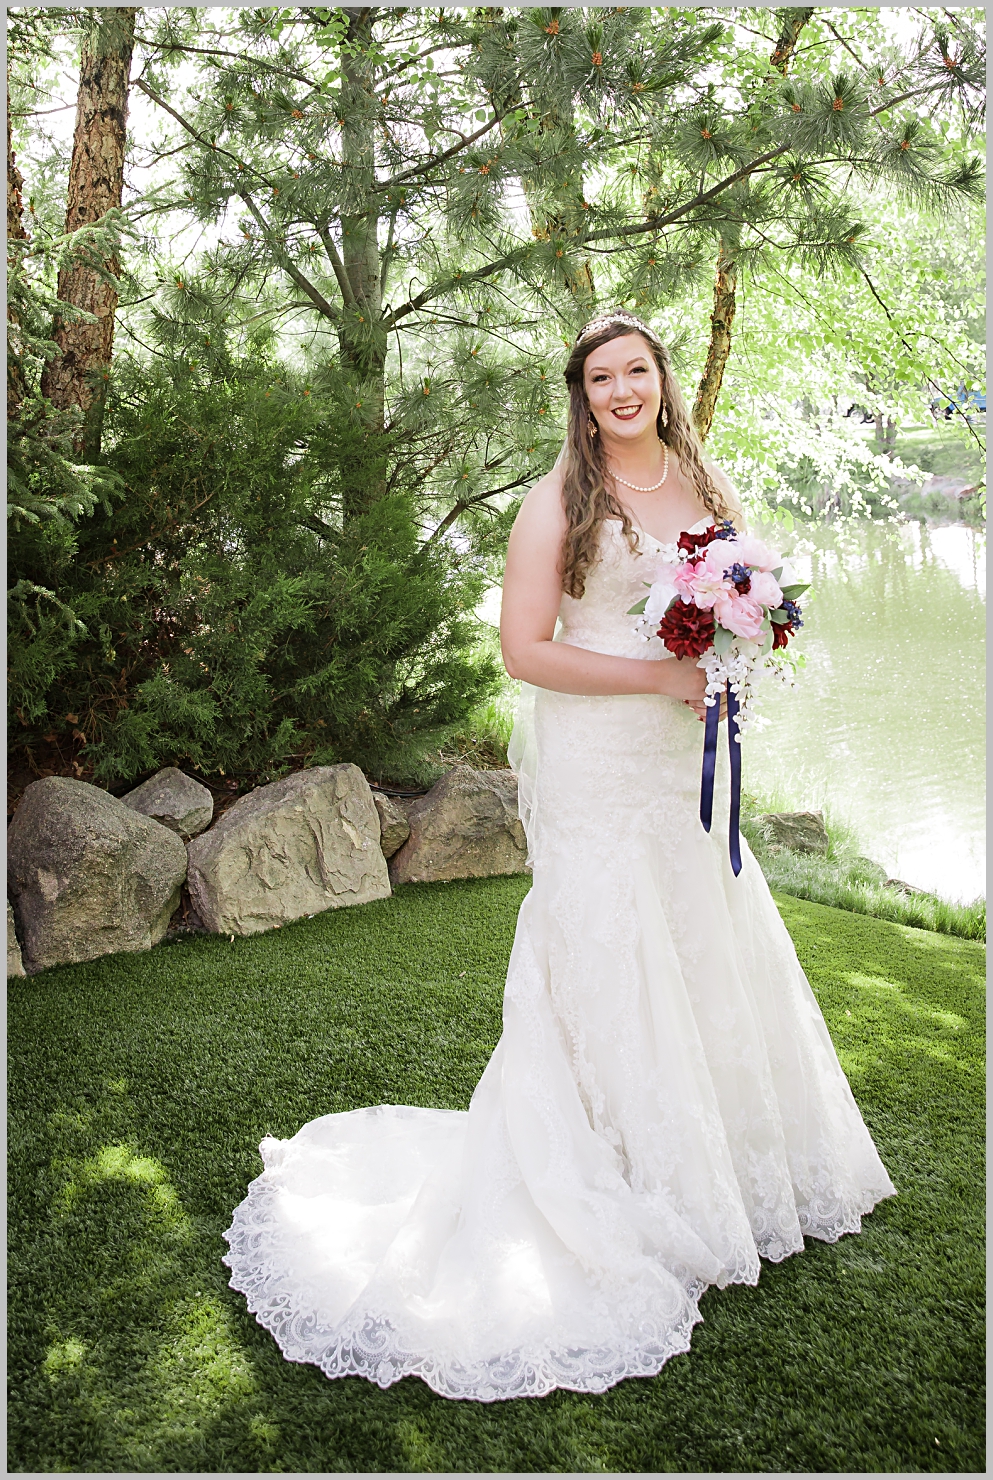 Boise-Wedding-Photographer,Idaho-wedding-photographer,Waters-Edge-Event-Center,boise Idaho photographer,wedding photographer,